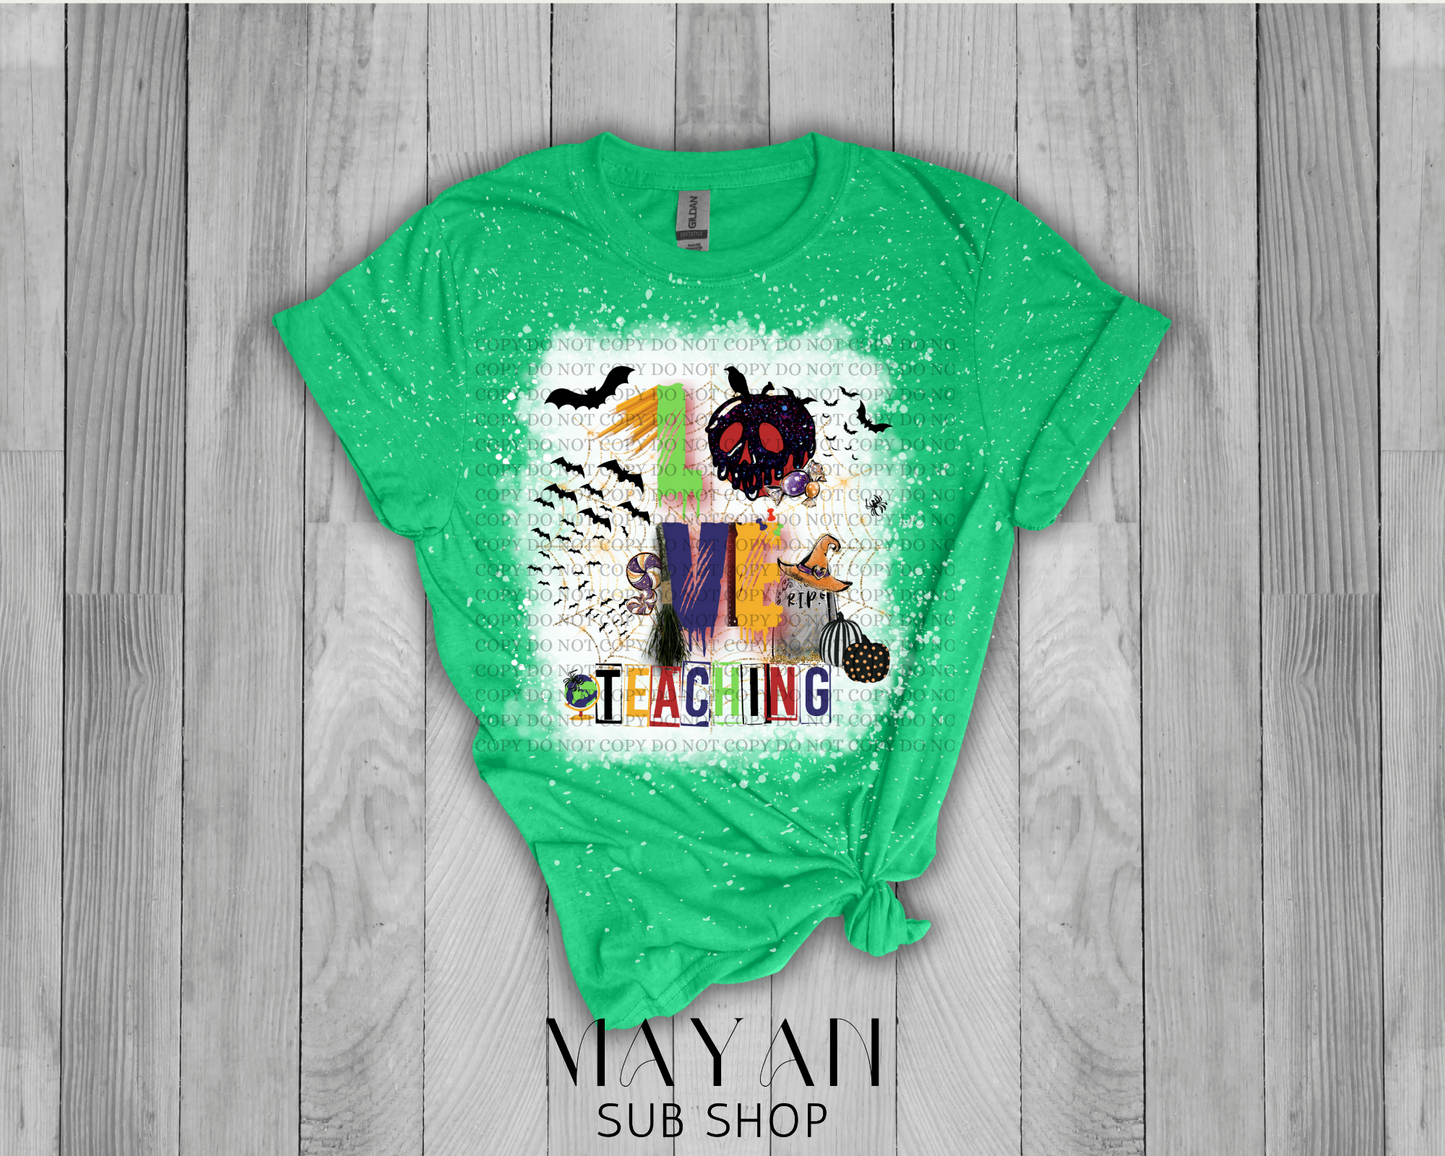 Love Teaching Bleached Shirt - Mayan Sub Shop